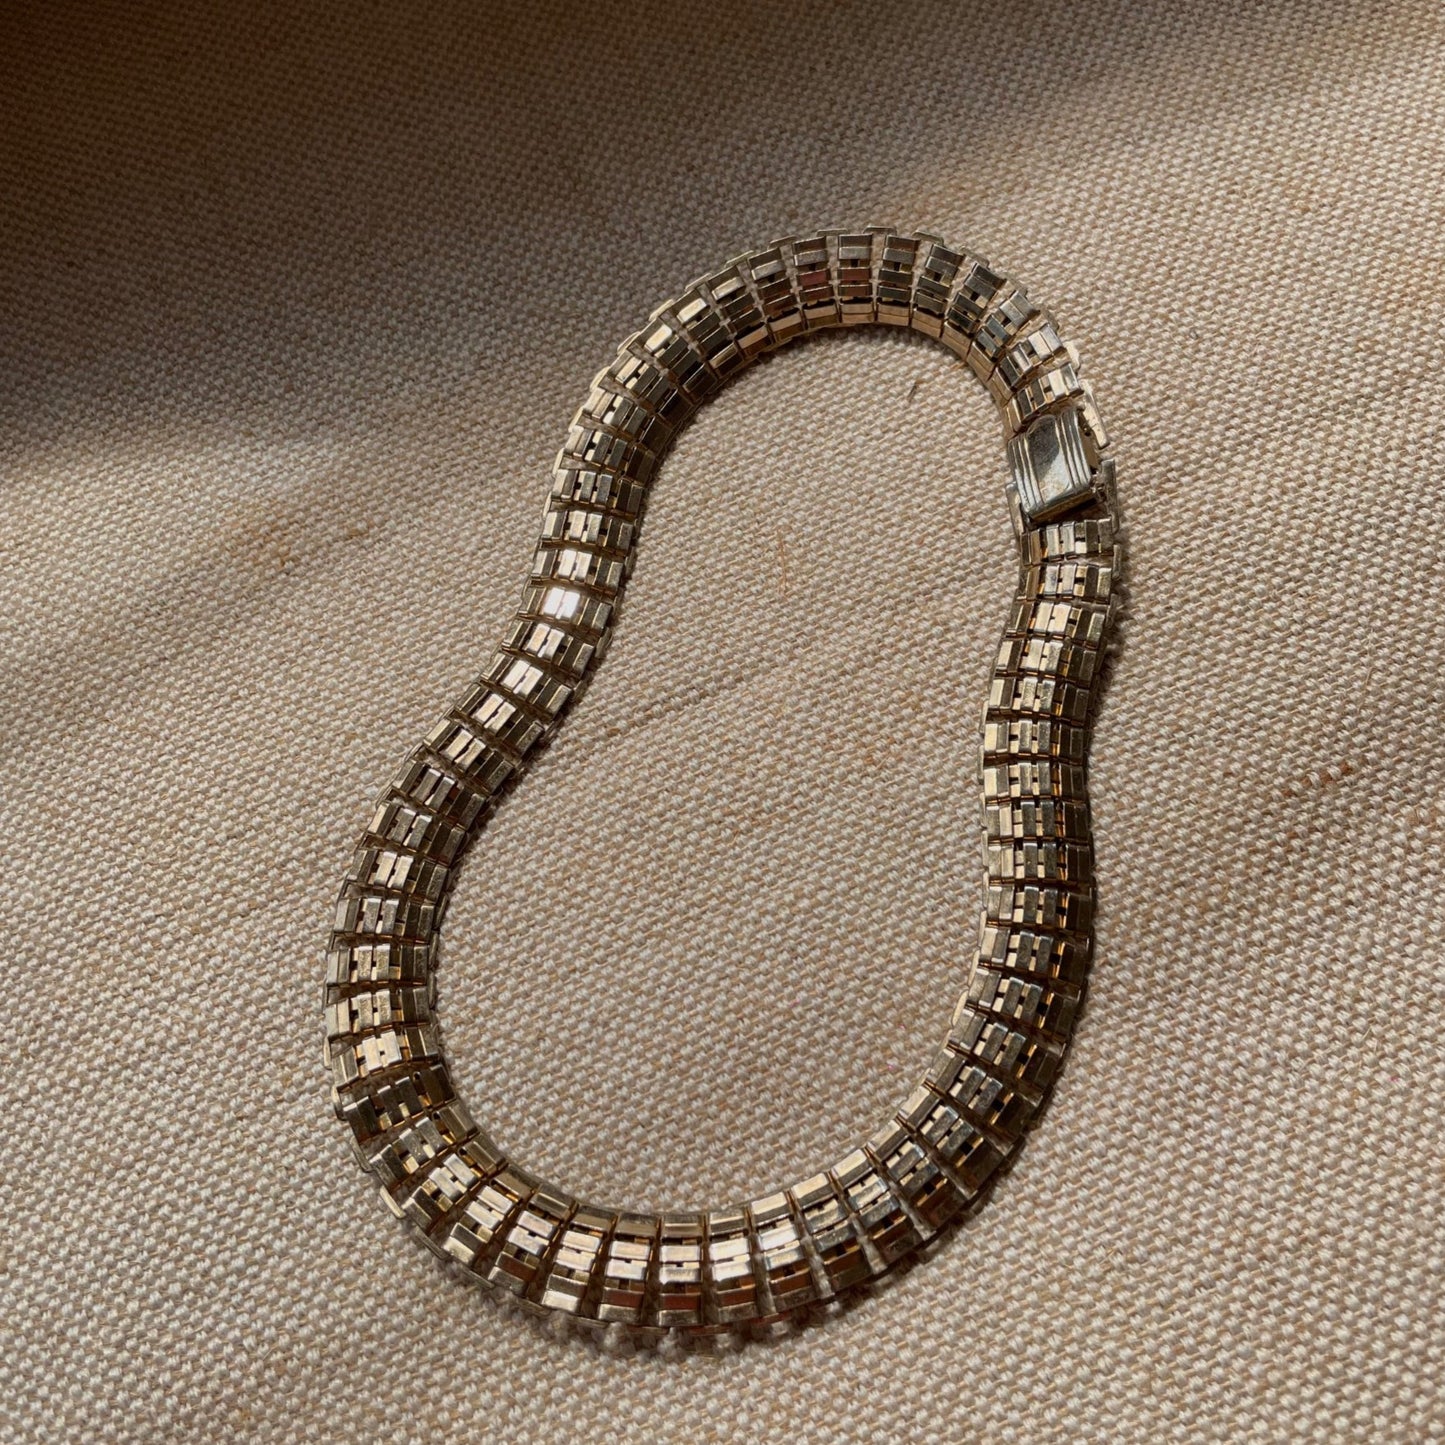 Vintage 1970s Coro silver tone necklace